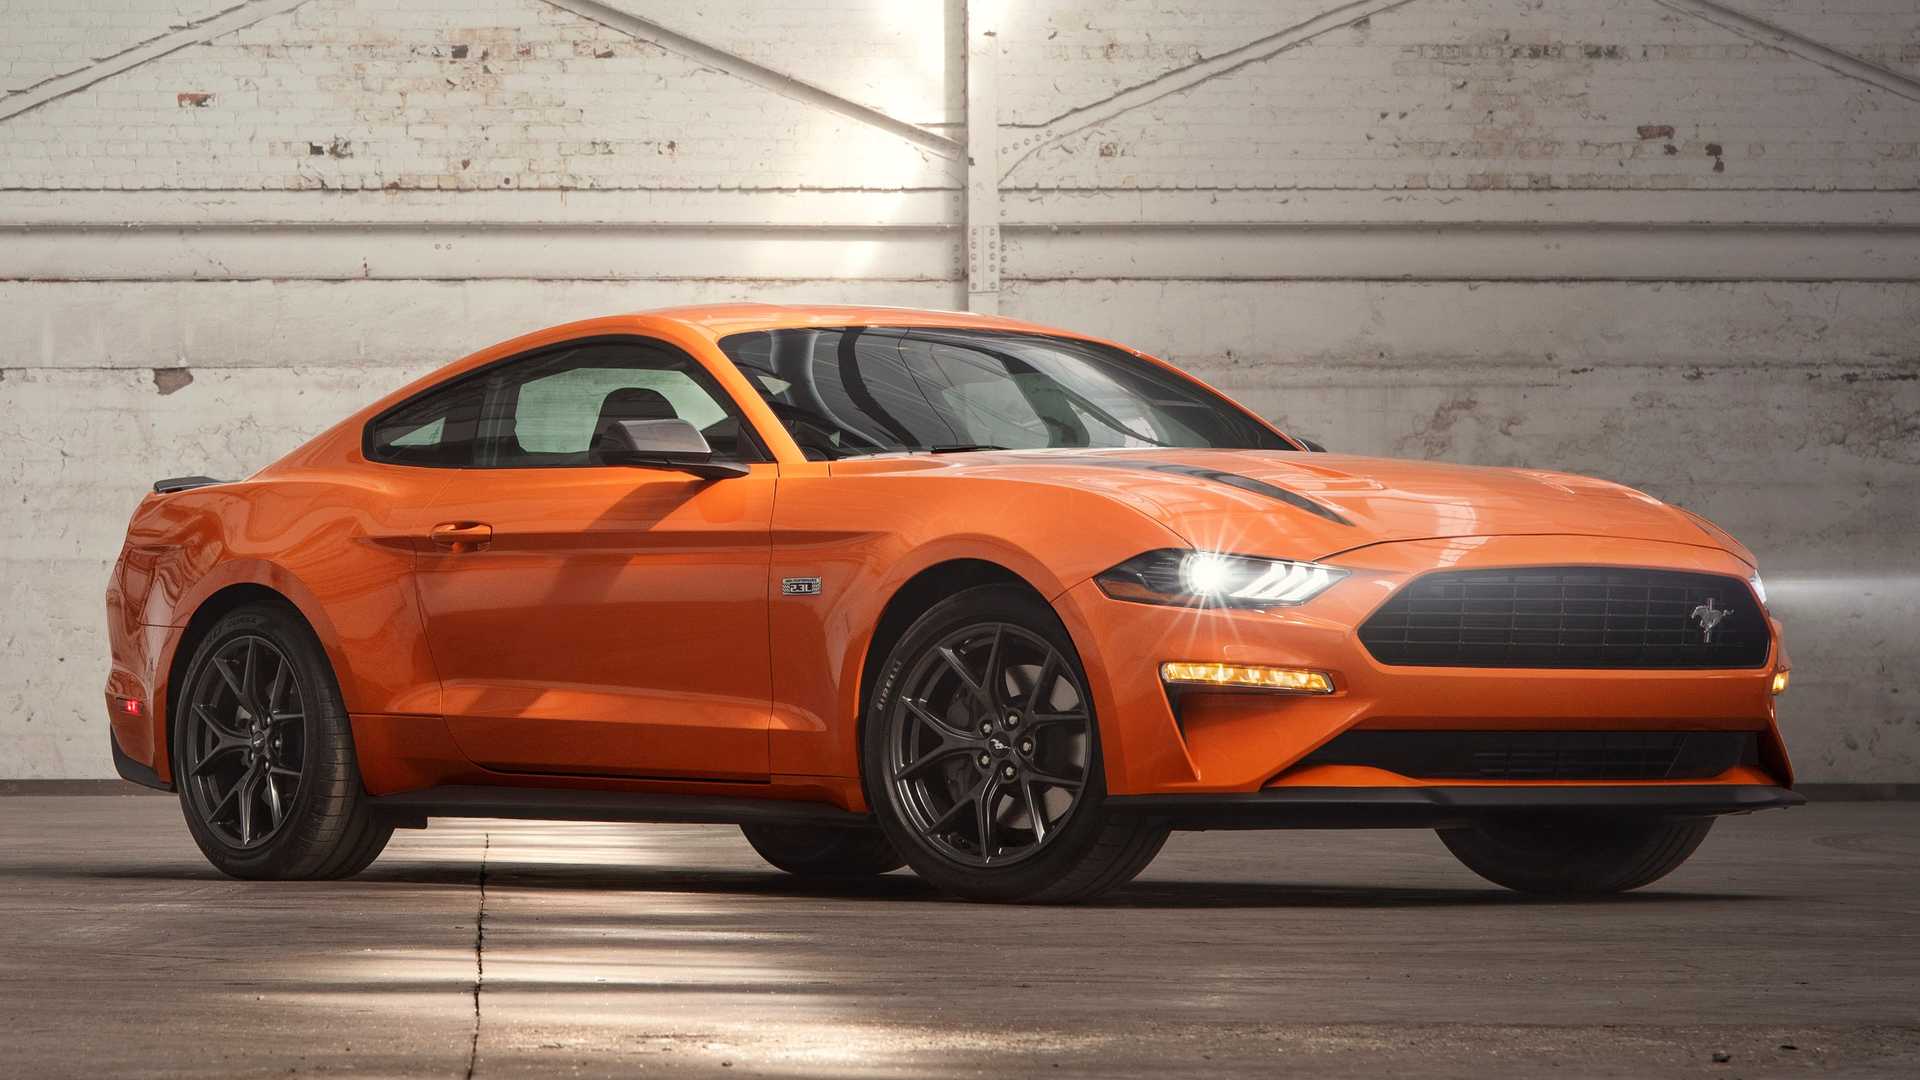 Ra mắt Ford Mustang 2020 với động cơ EcoBootst mạnh hơn